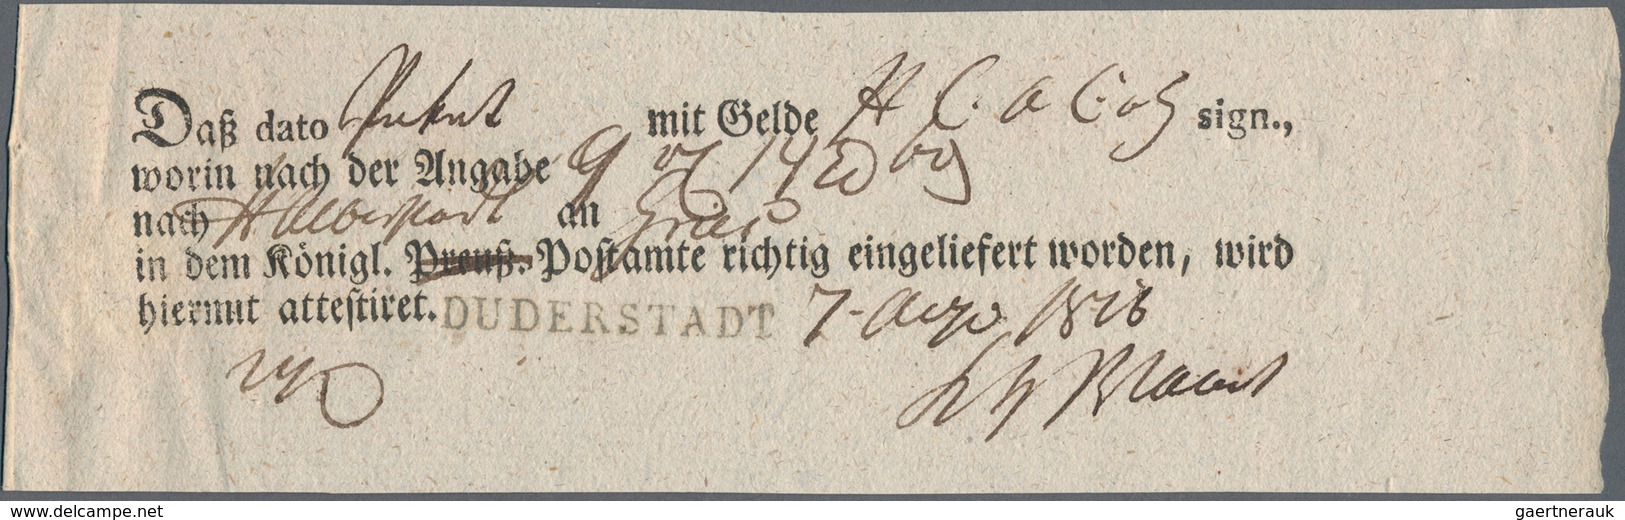 Hannover - Vorphilatelie: 1816, Kab.-Aufbrauchs-Postmeisterschein KÖNIGL.PREUSS.POSTAMT (preuss. Ges - Vorphilatelie